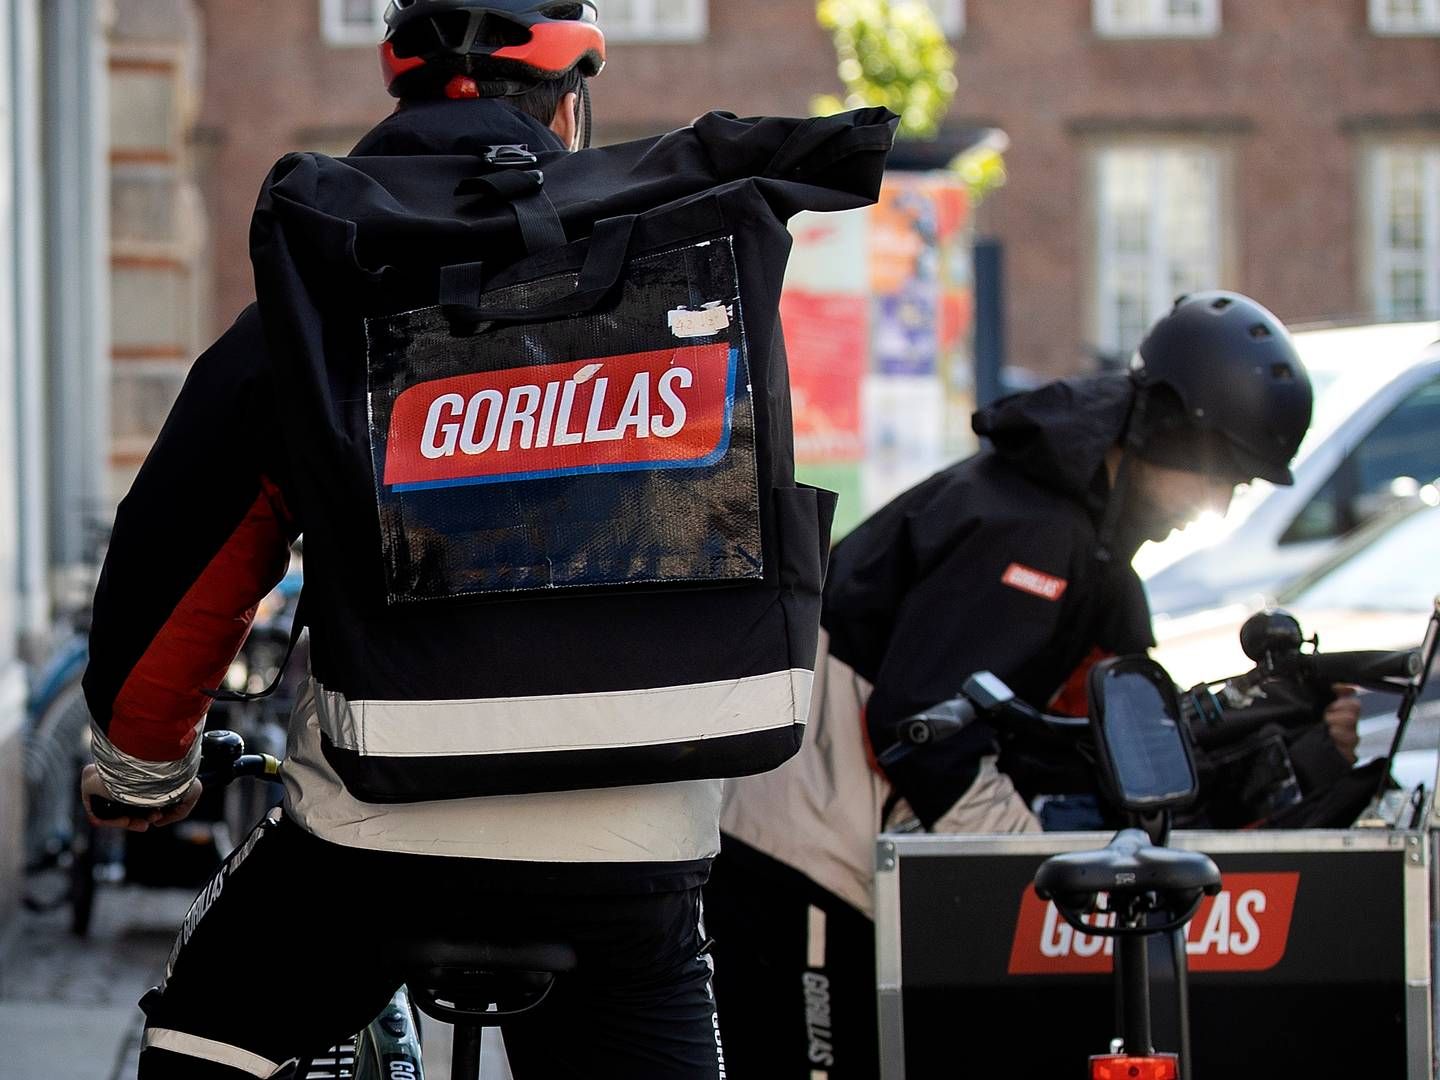 Gorillas gik konkurs i februar. | Foto: Finn Frandsen